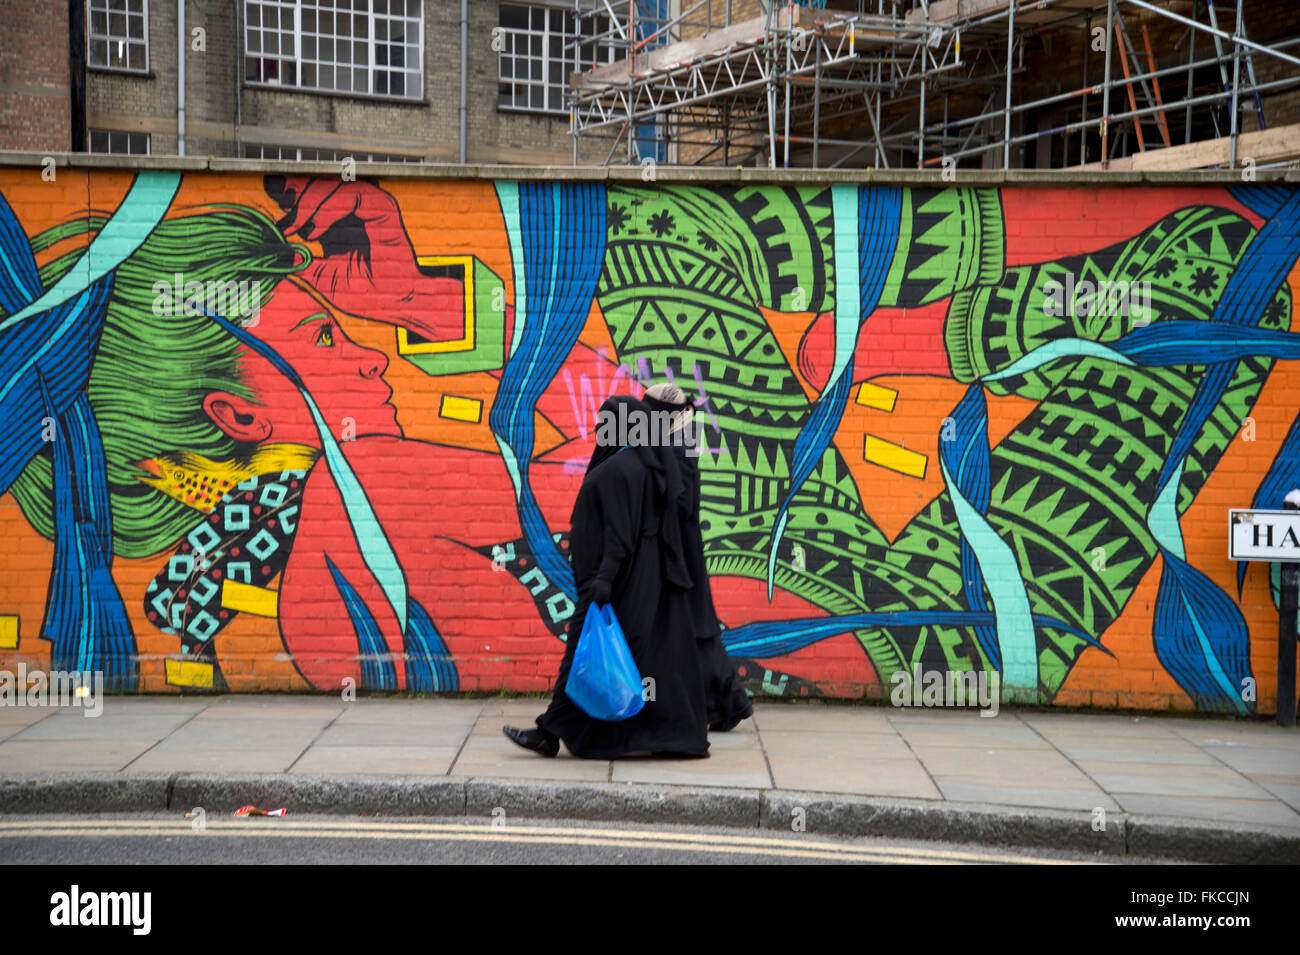 Hanbury Street, an der Brick Lane. Tower Hamlets. Zwei Frauen tragen schwarze Mäntel und Schleier gehen vorbei an einem bunten Wandgemälde. Stockfoto